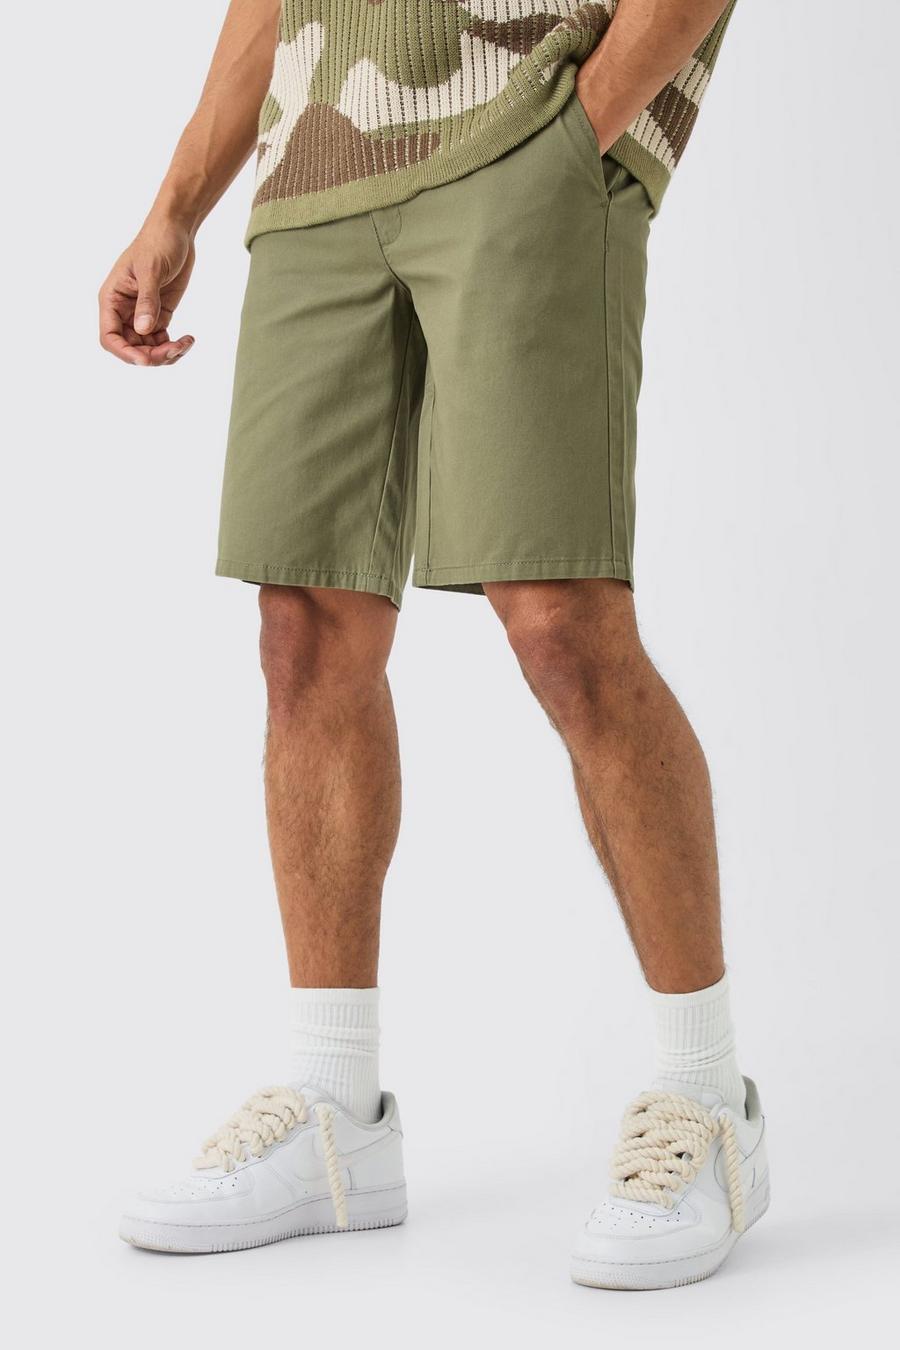 Lockere khaki Shorts